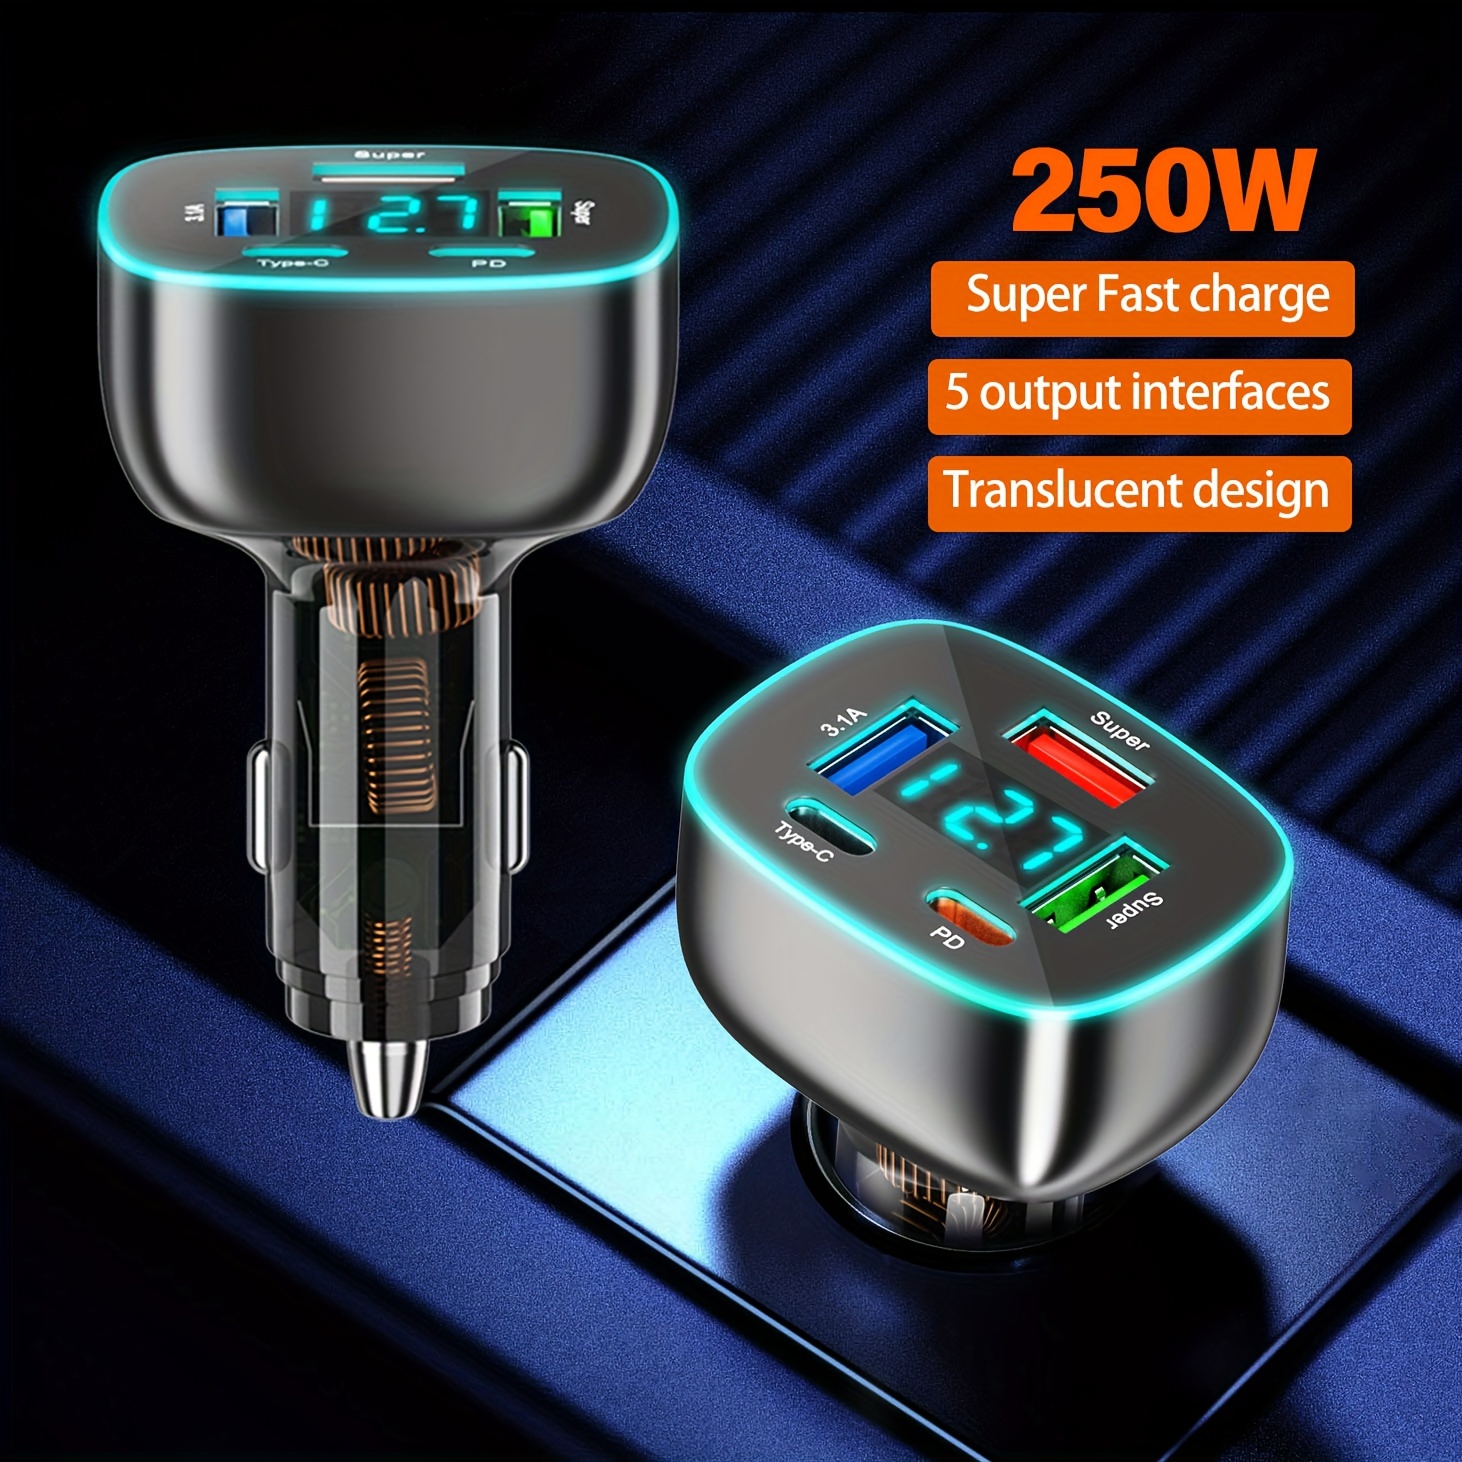 

Chargeur de Voiture Super Rapide 250W avec 5A Pd & USB - Adaptateur Universel 12V-32V pour Voitures et Camions, Design Translucide avec Affichage de Tension en Temps Réel.